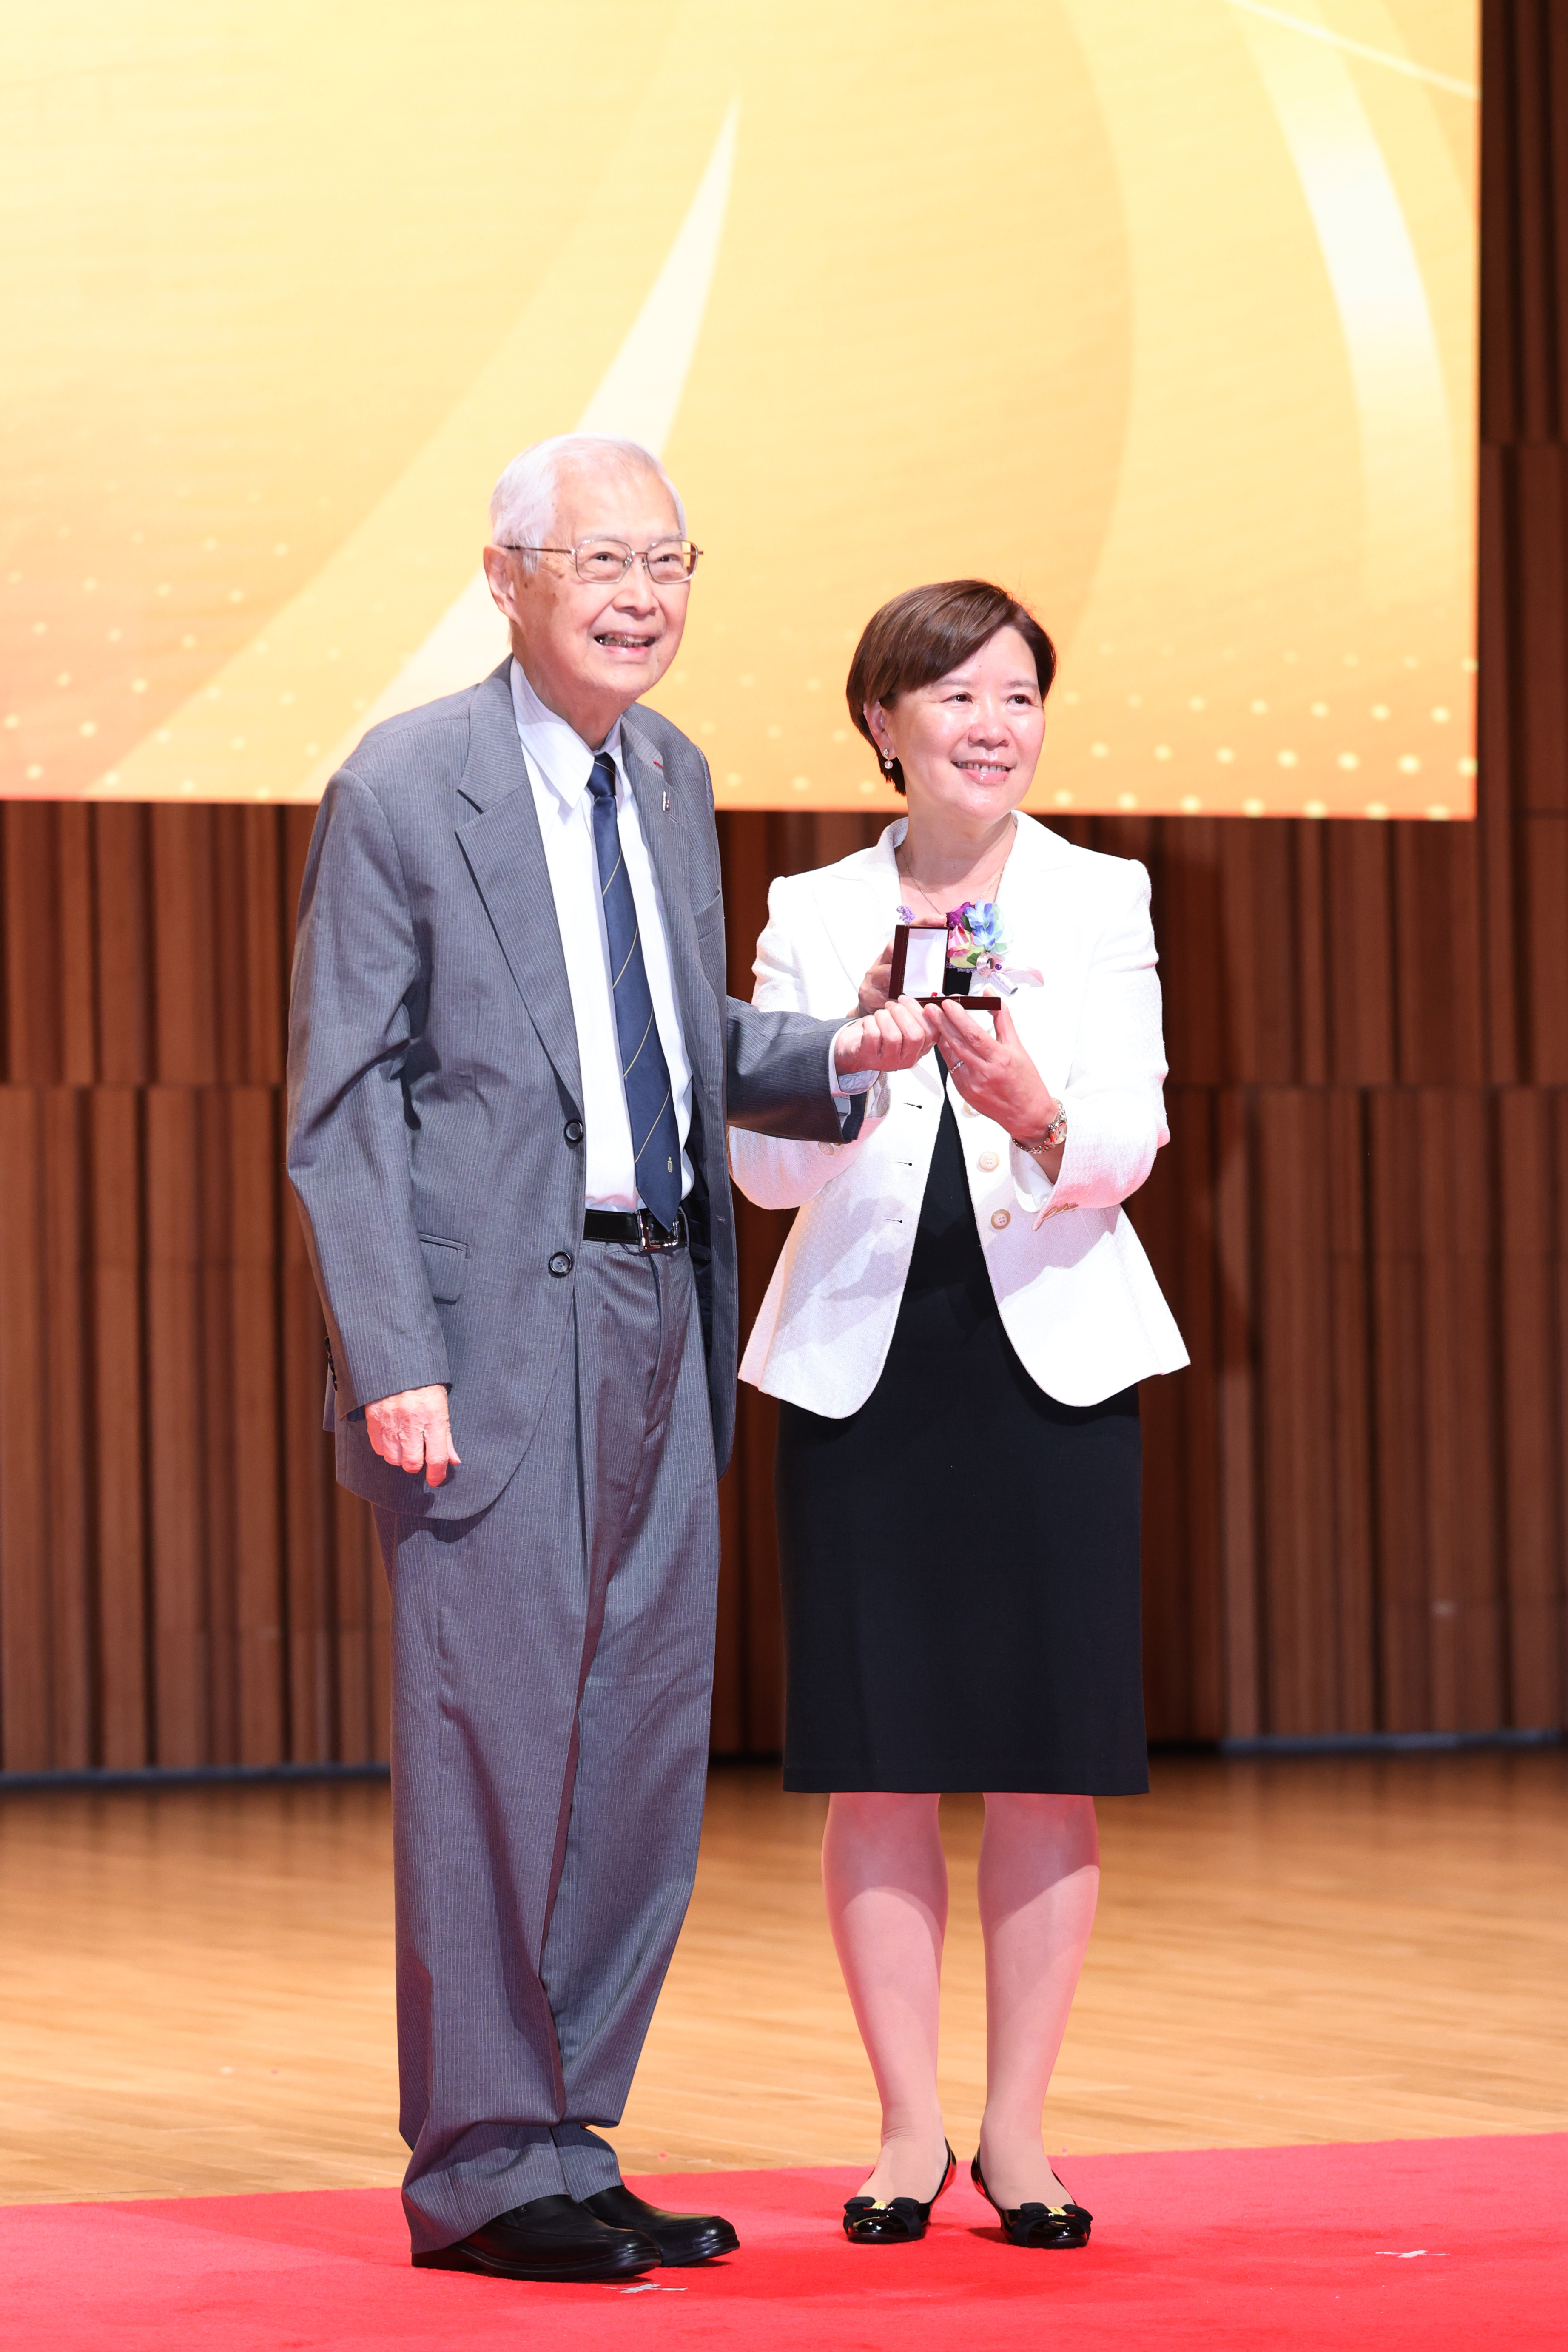 科大創校校長吳家瑋教授特意出席，向現任校長葉玉如教授頒發30年長期服務獎。